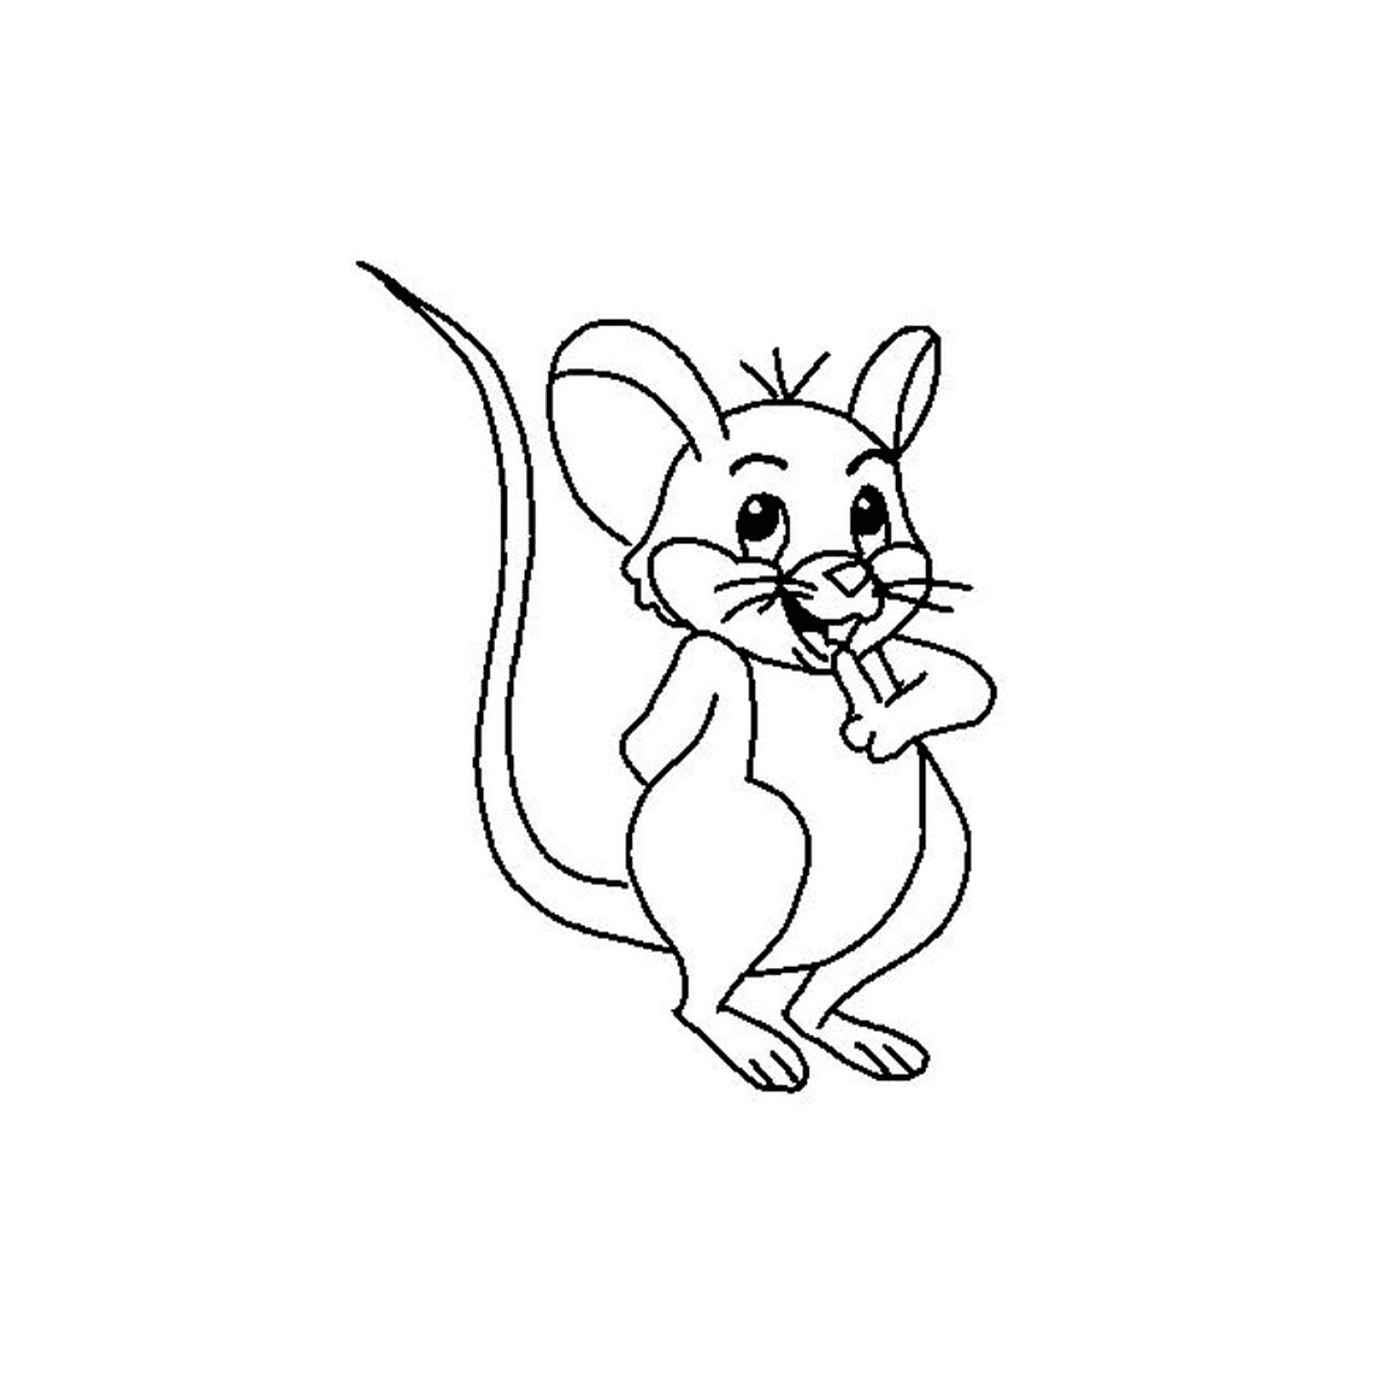   Une souris maternelle 